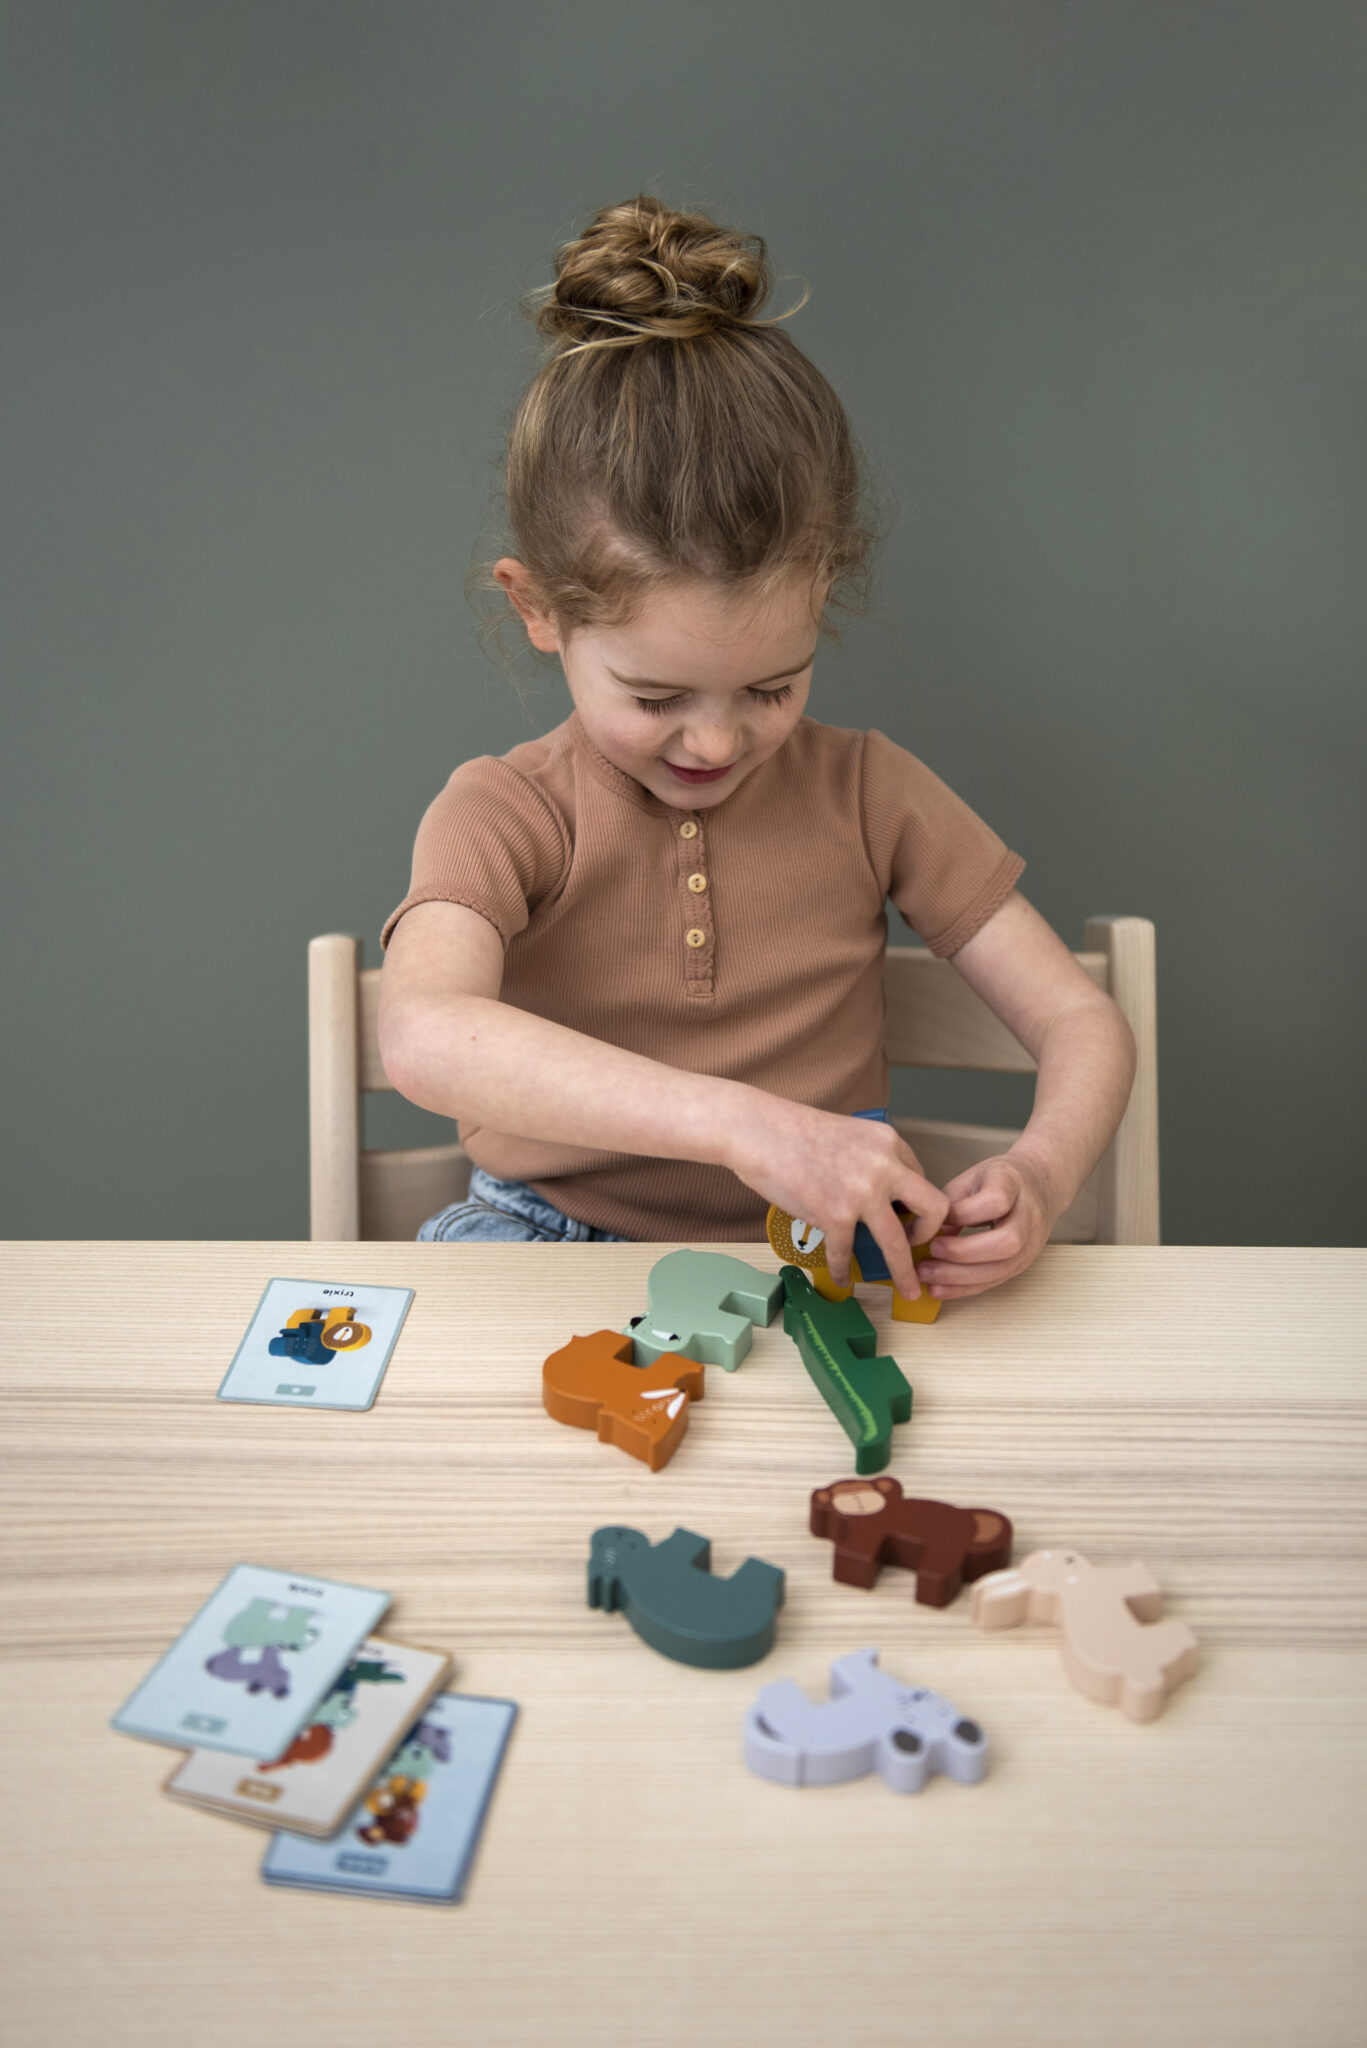 Puzzles en bois pour les tout-petits Bébé Age 2 3 4 ans Apprentissage  Couleur Perception Empilage Blocs de bois Garçon et fille Cadeaux  d'anniversaire